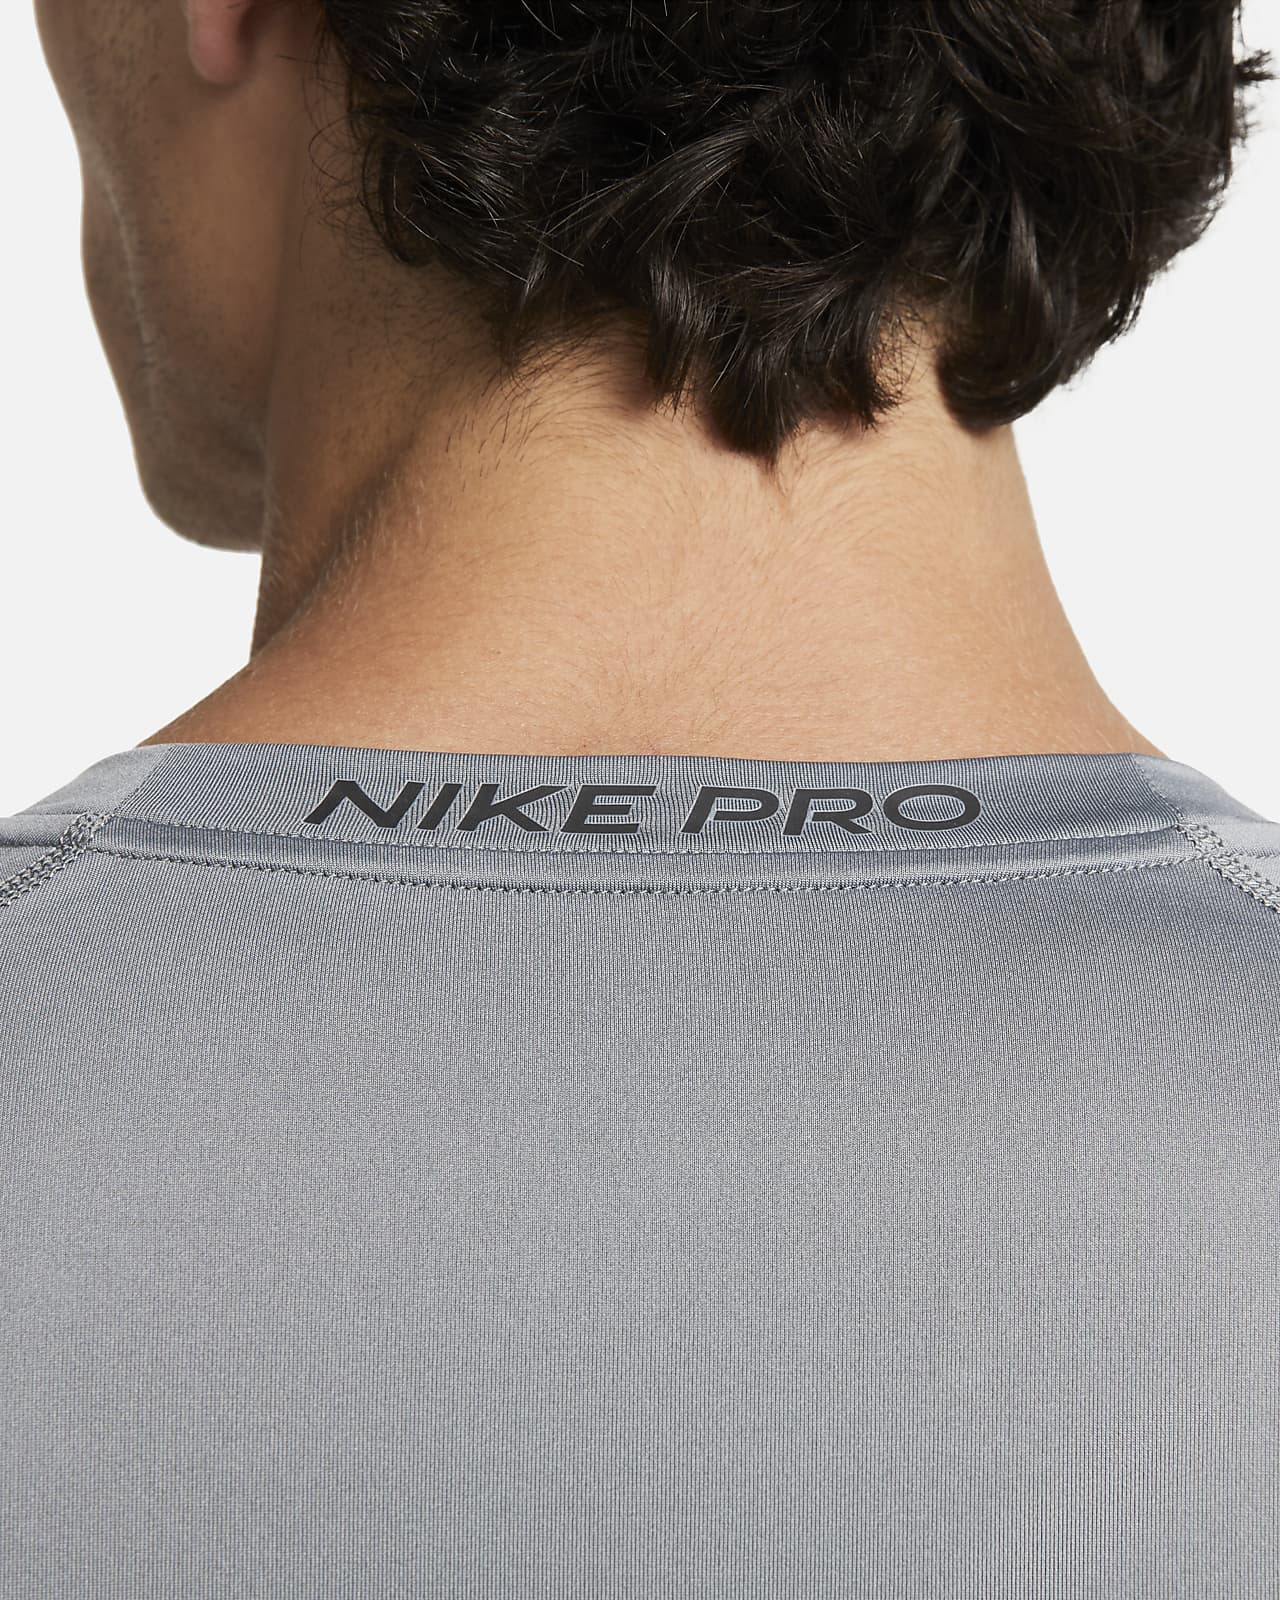 Nike Pro Dri-FIT Men's Tight-Fit Long-Sleeve Top. Nike ZA